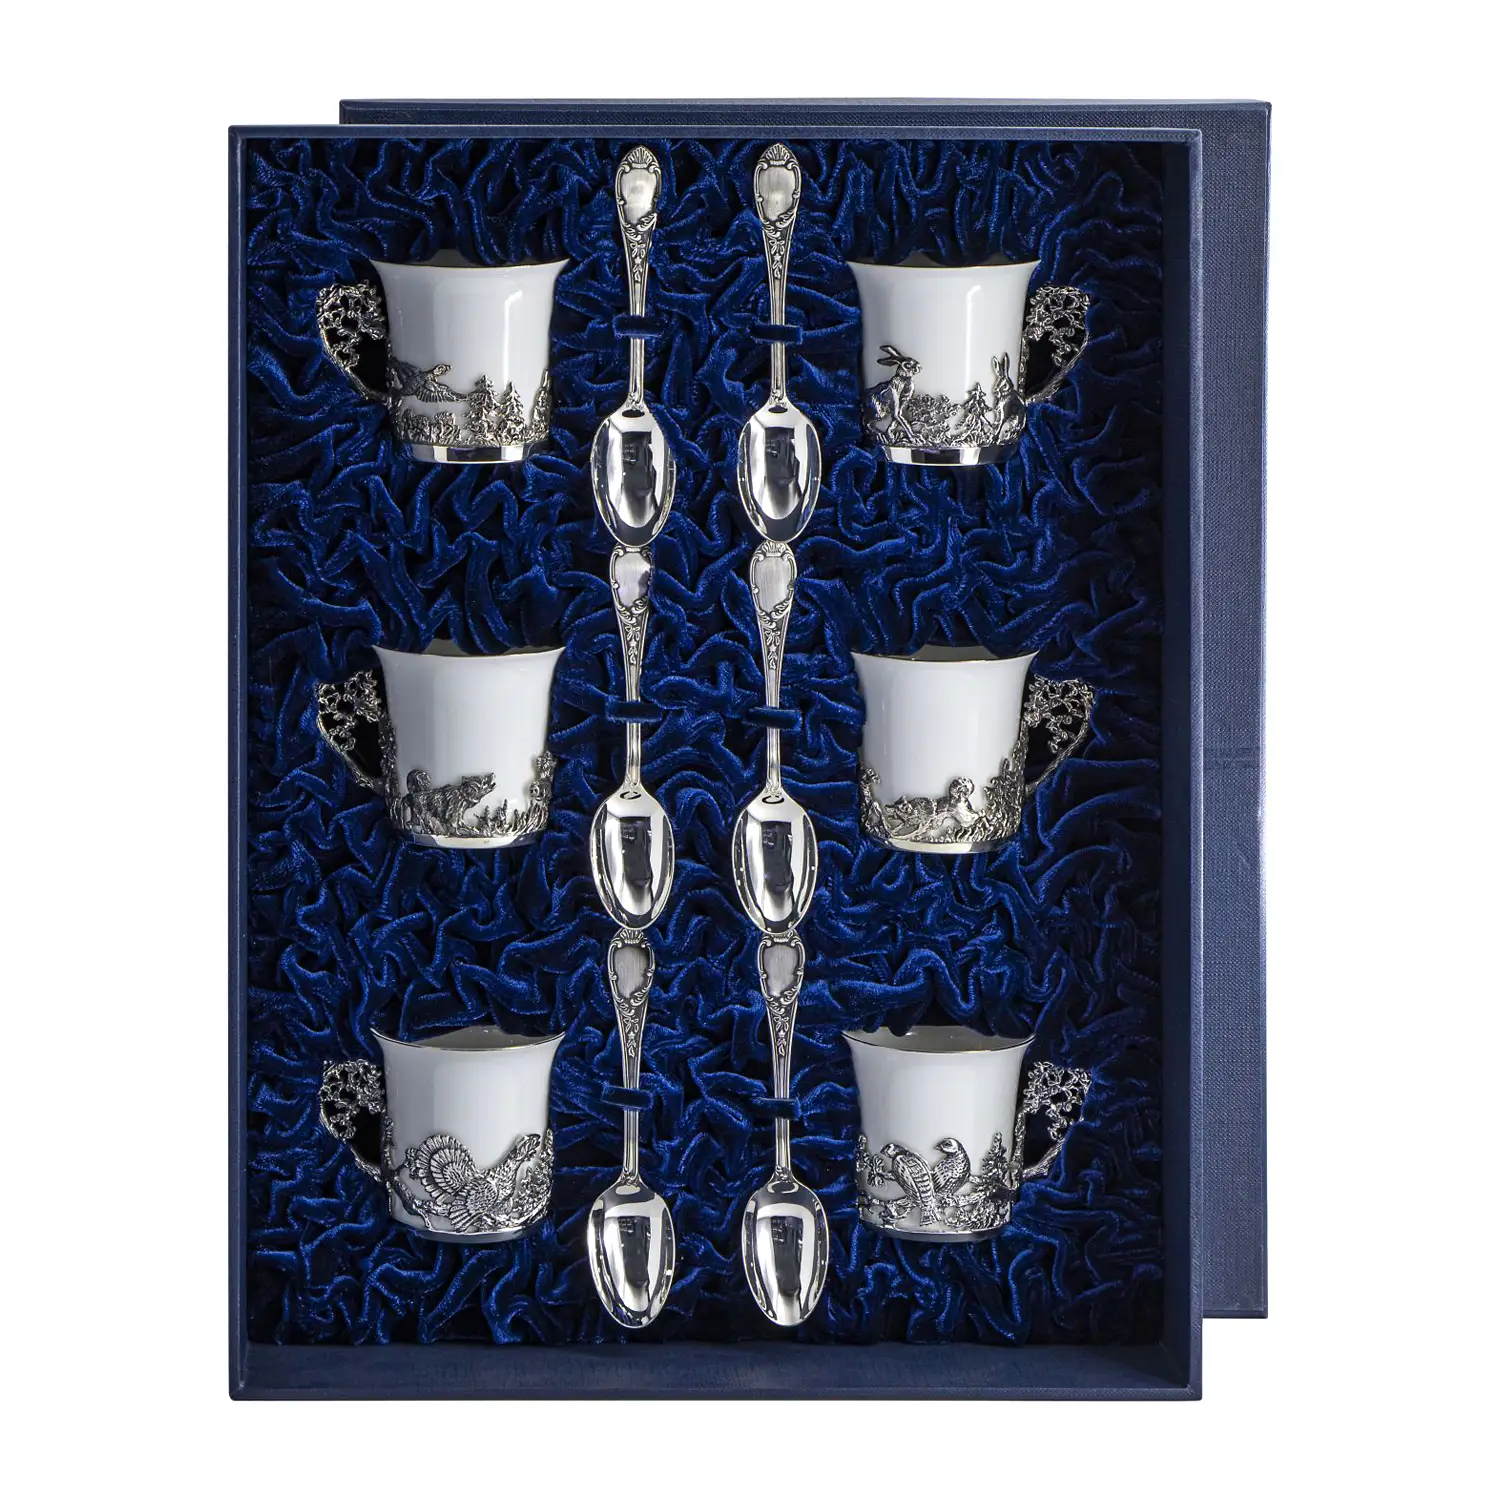 Набор кофейных чашек Охотничьи: ложка, чашка (Серебро 925) набор кофейных чашек богема ложка чашка на 6 персон серебро 925